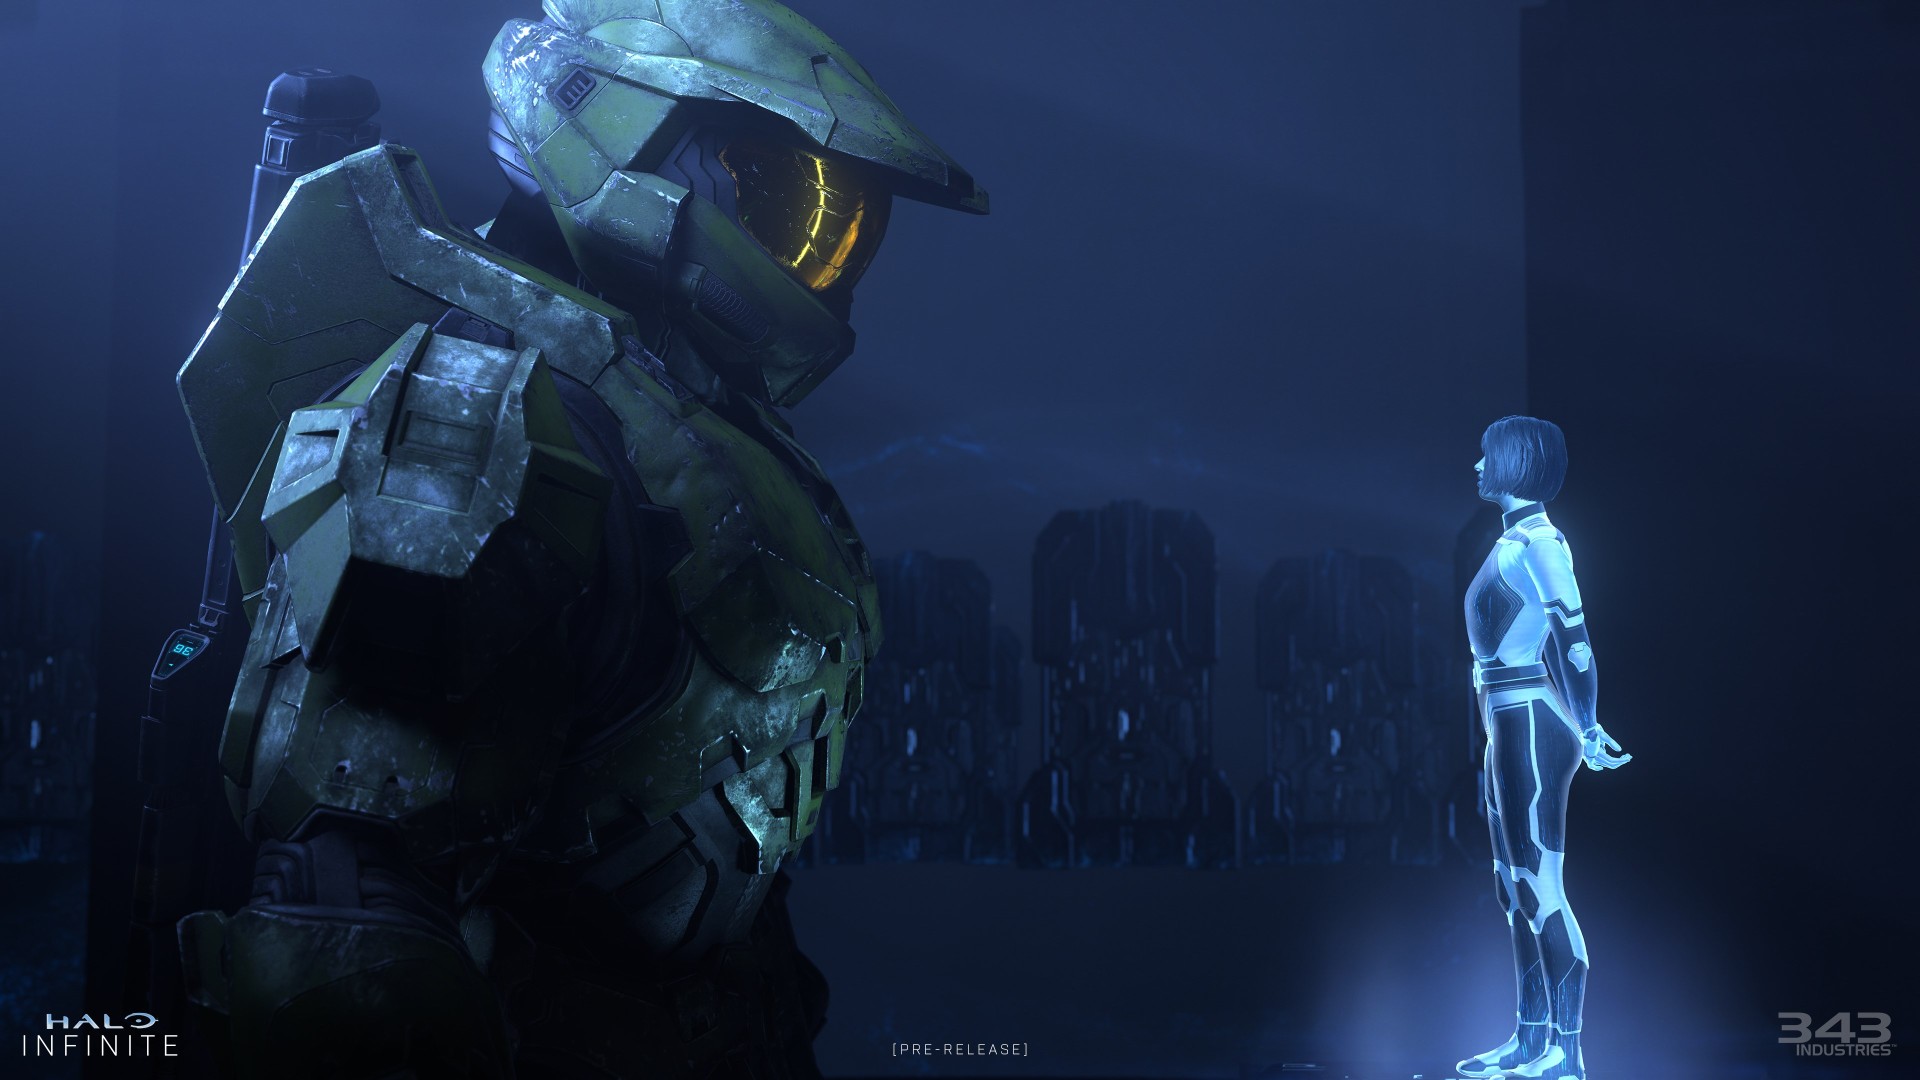 Halo Infinite (campaña) – 8 de diciembre – Optimizado para Xbox Series X|S – Xbox Game Pass